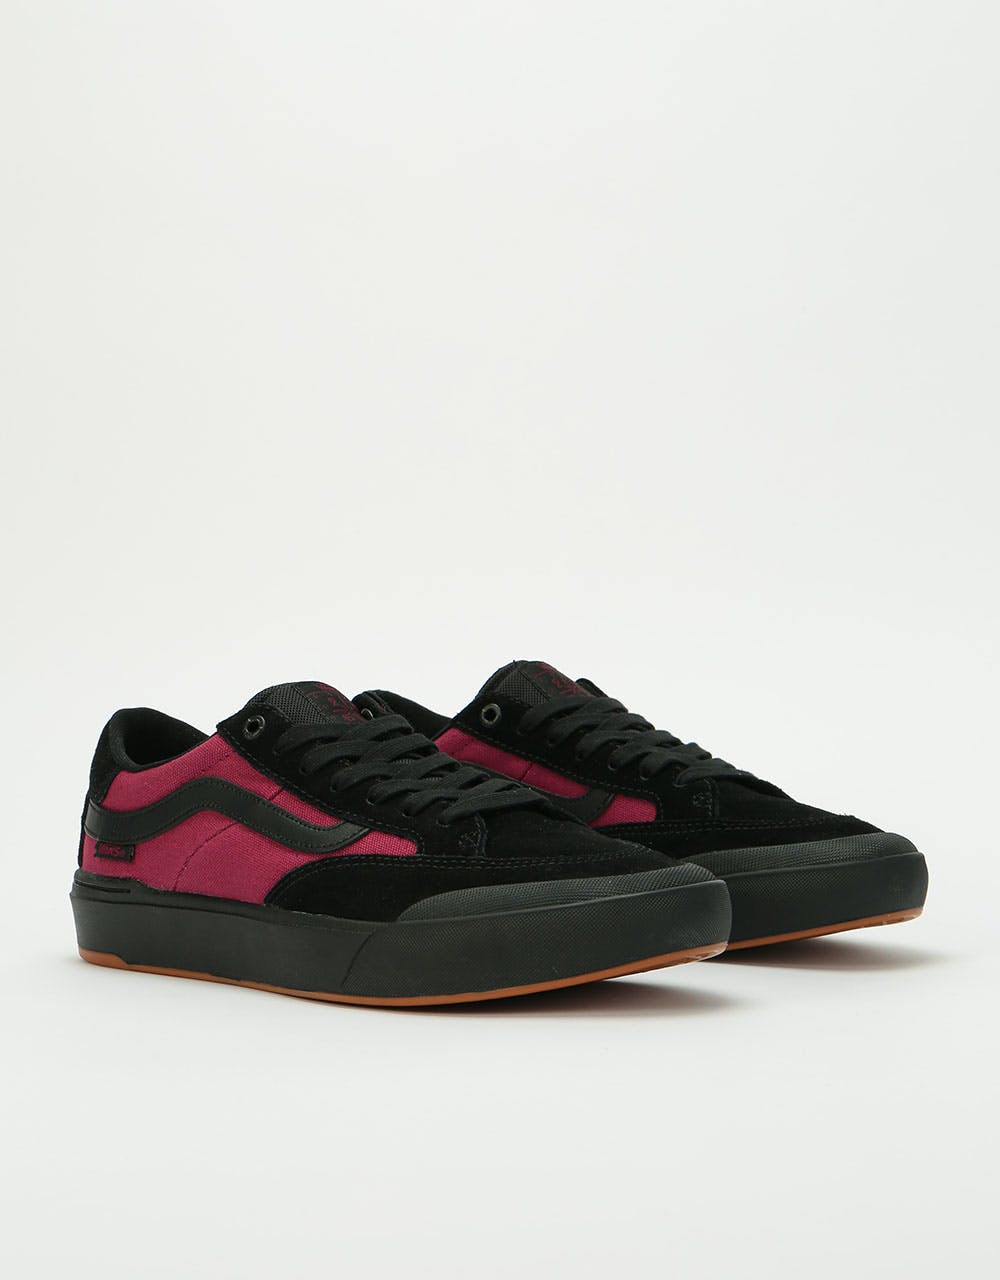 Vans Berle Pro Skate Shoes - (Punk) Black/Beet Red